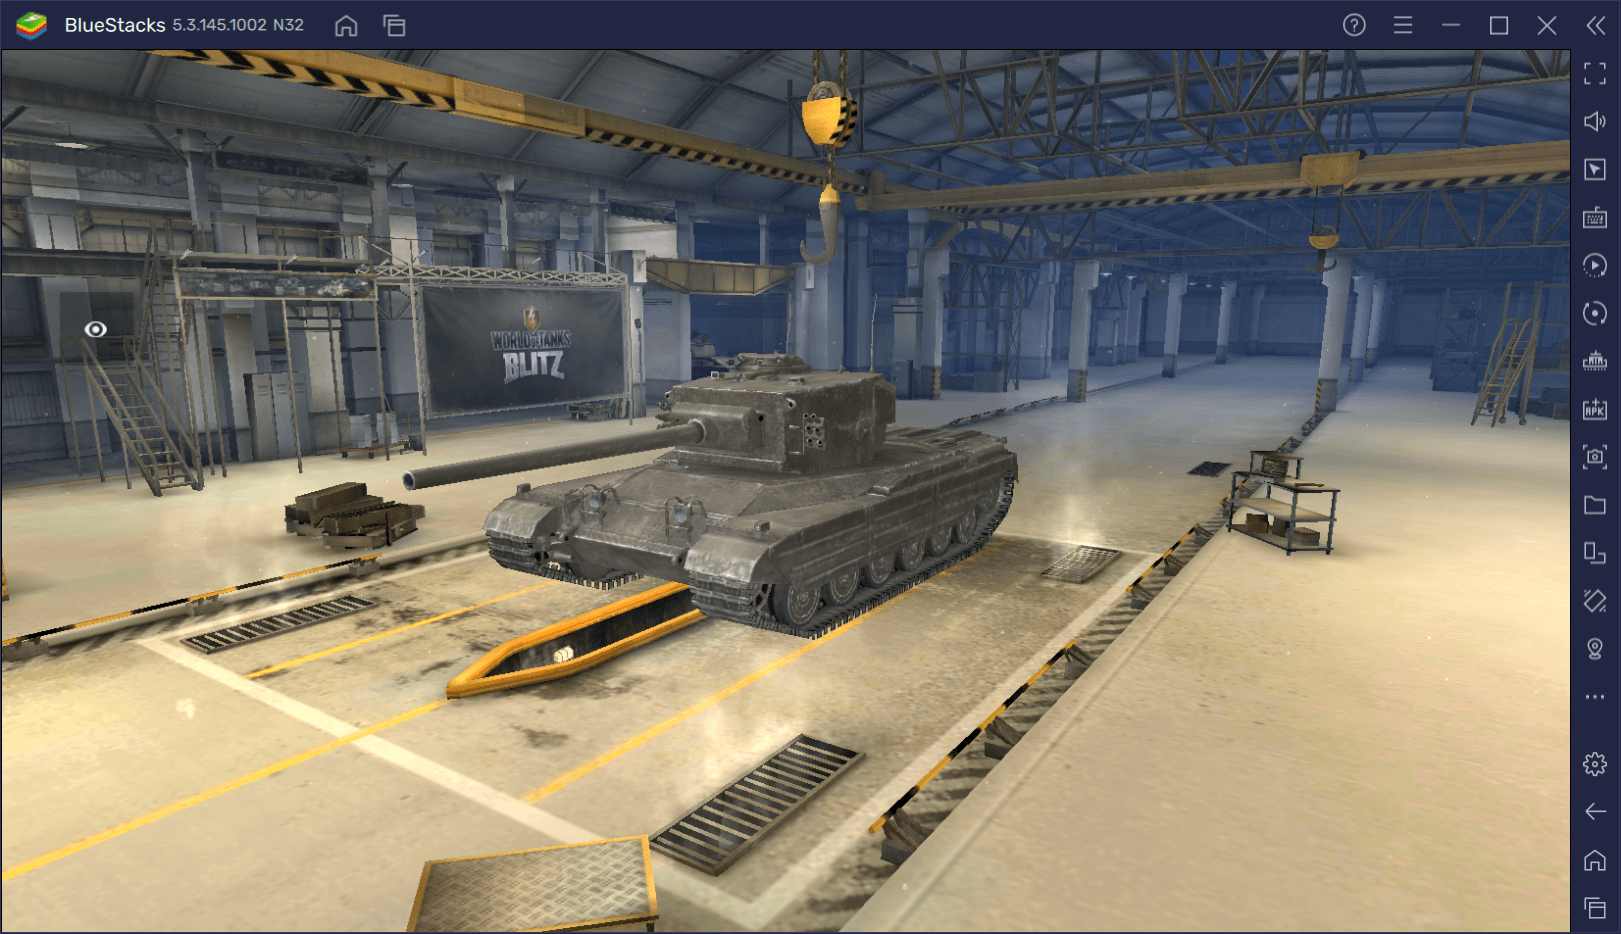 Гайд по премиумному танку Chimera в World of Tanks Blitz. Обзор параметров, достоинств и тактик игры